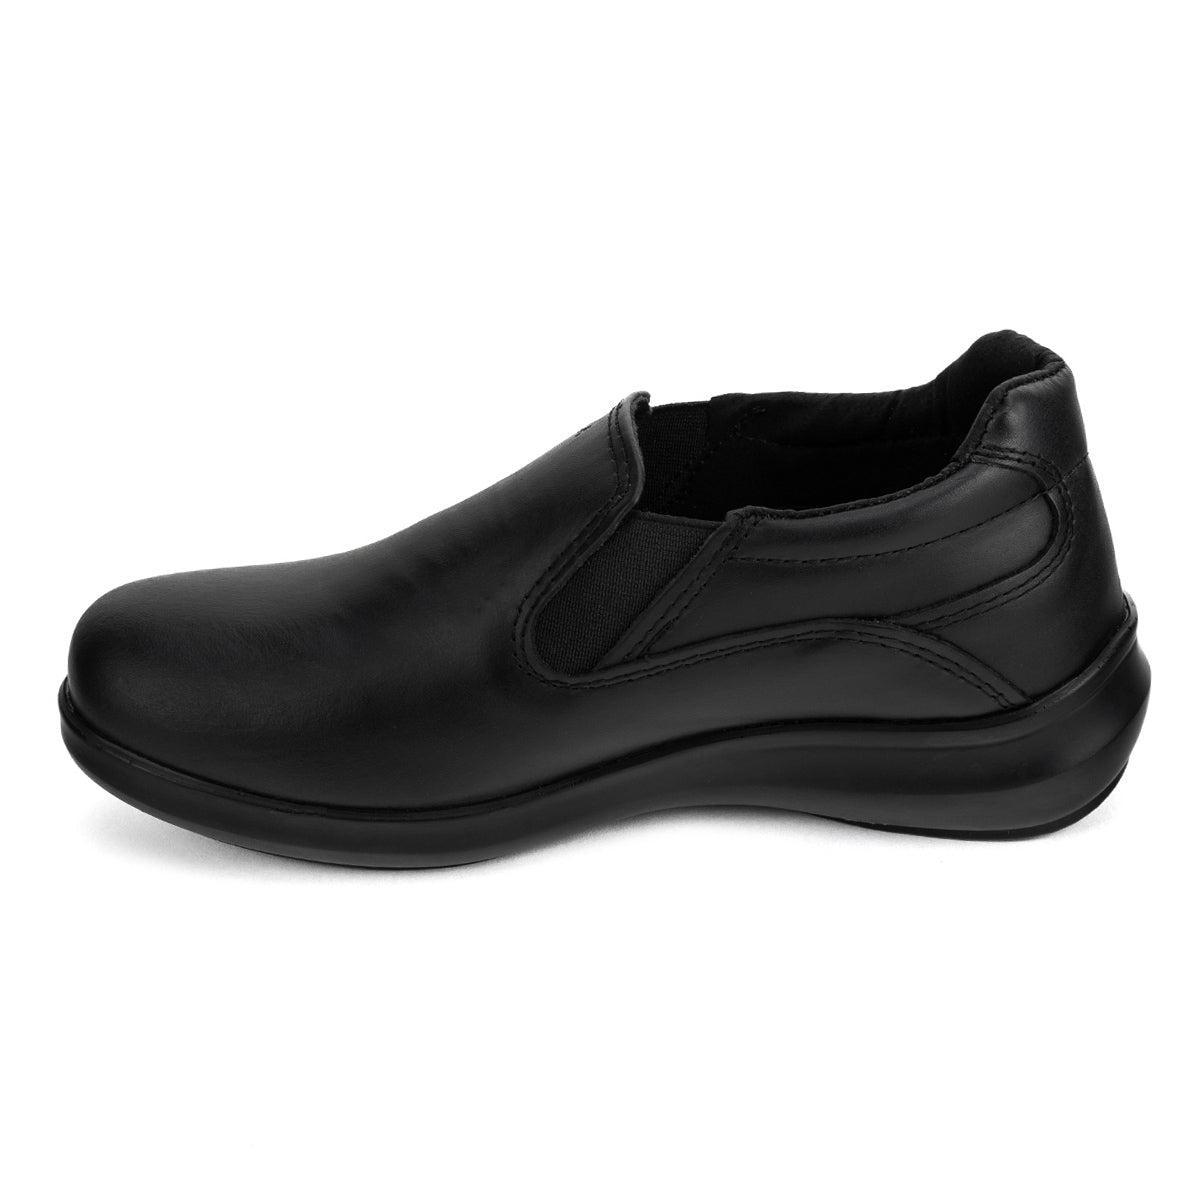 Zapato Servicio Negro Dama Gala 04868